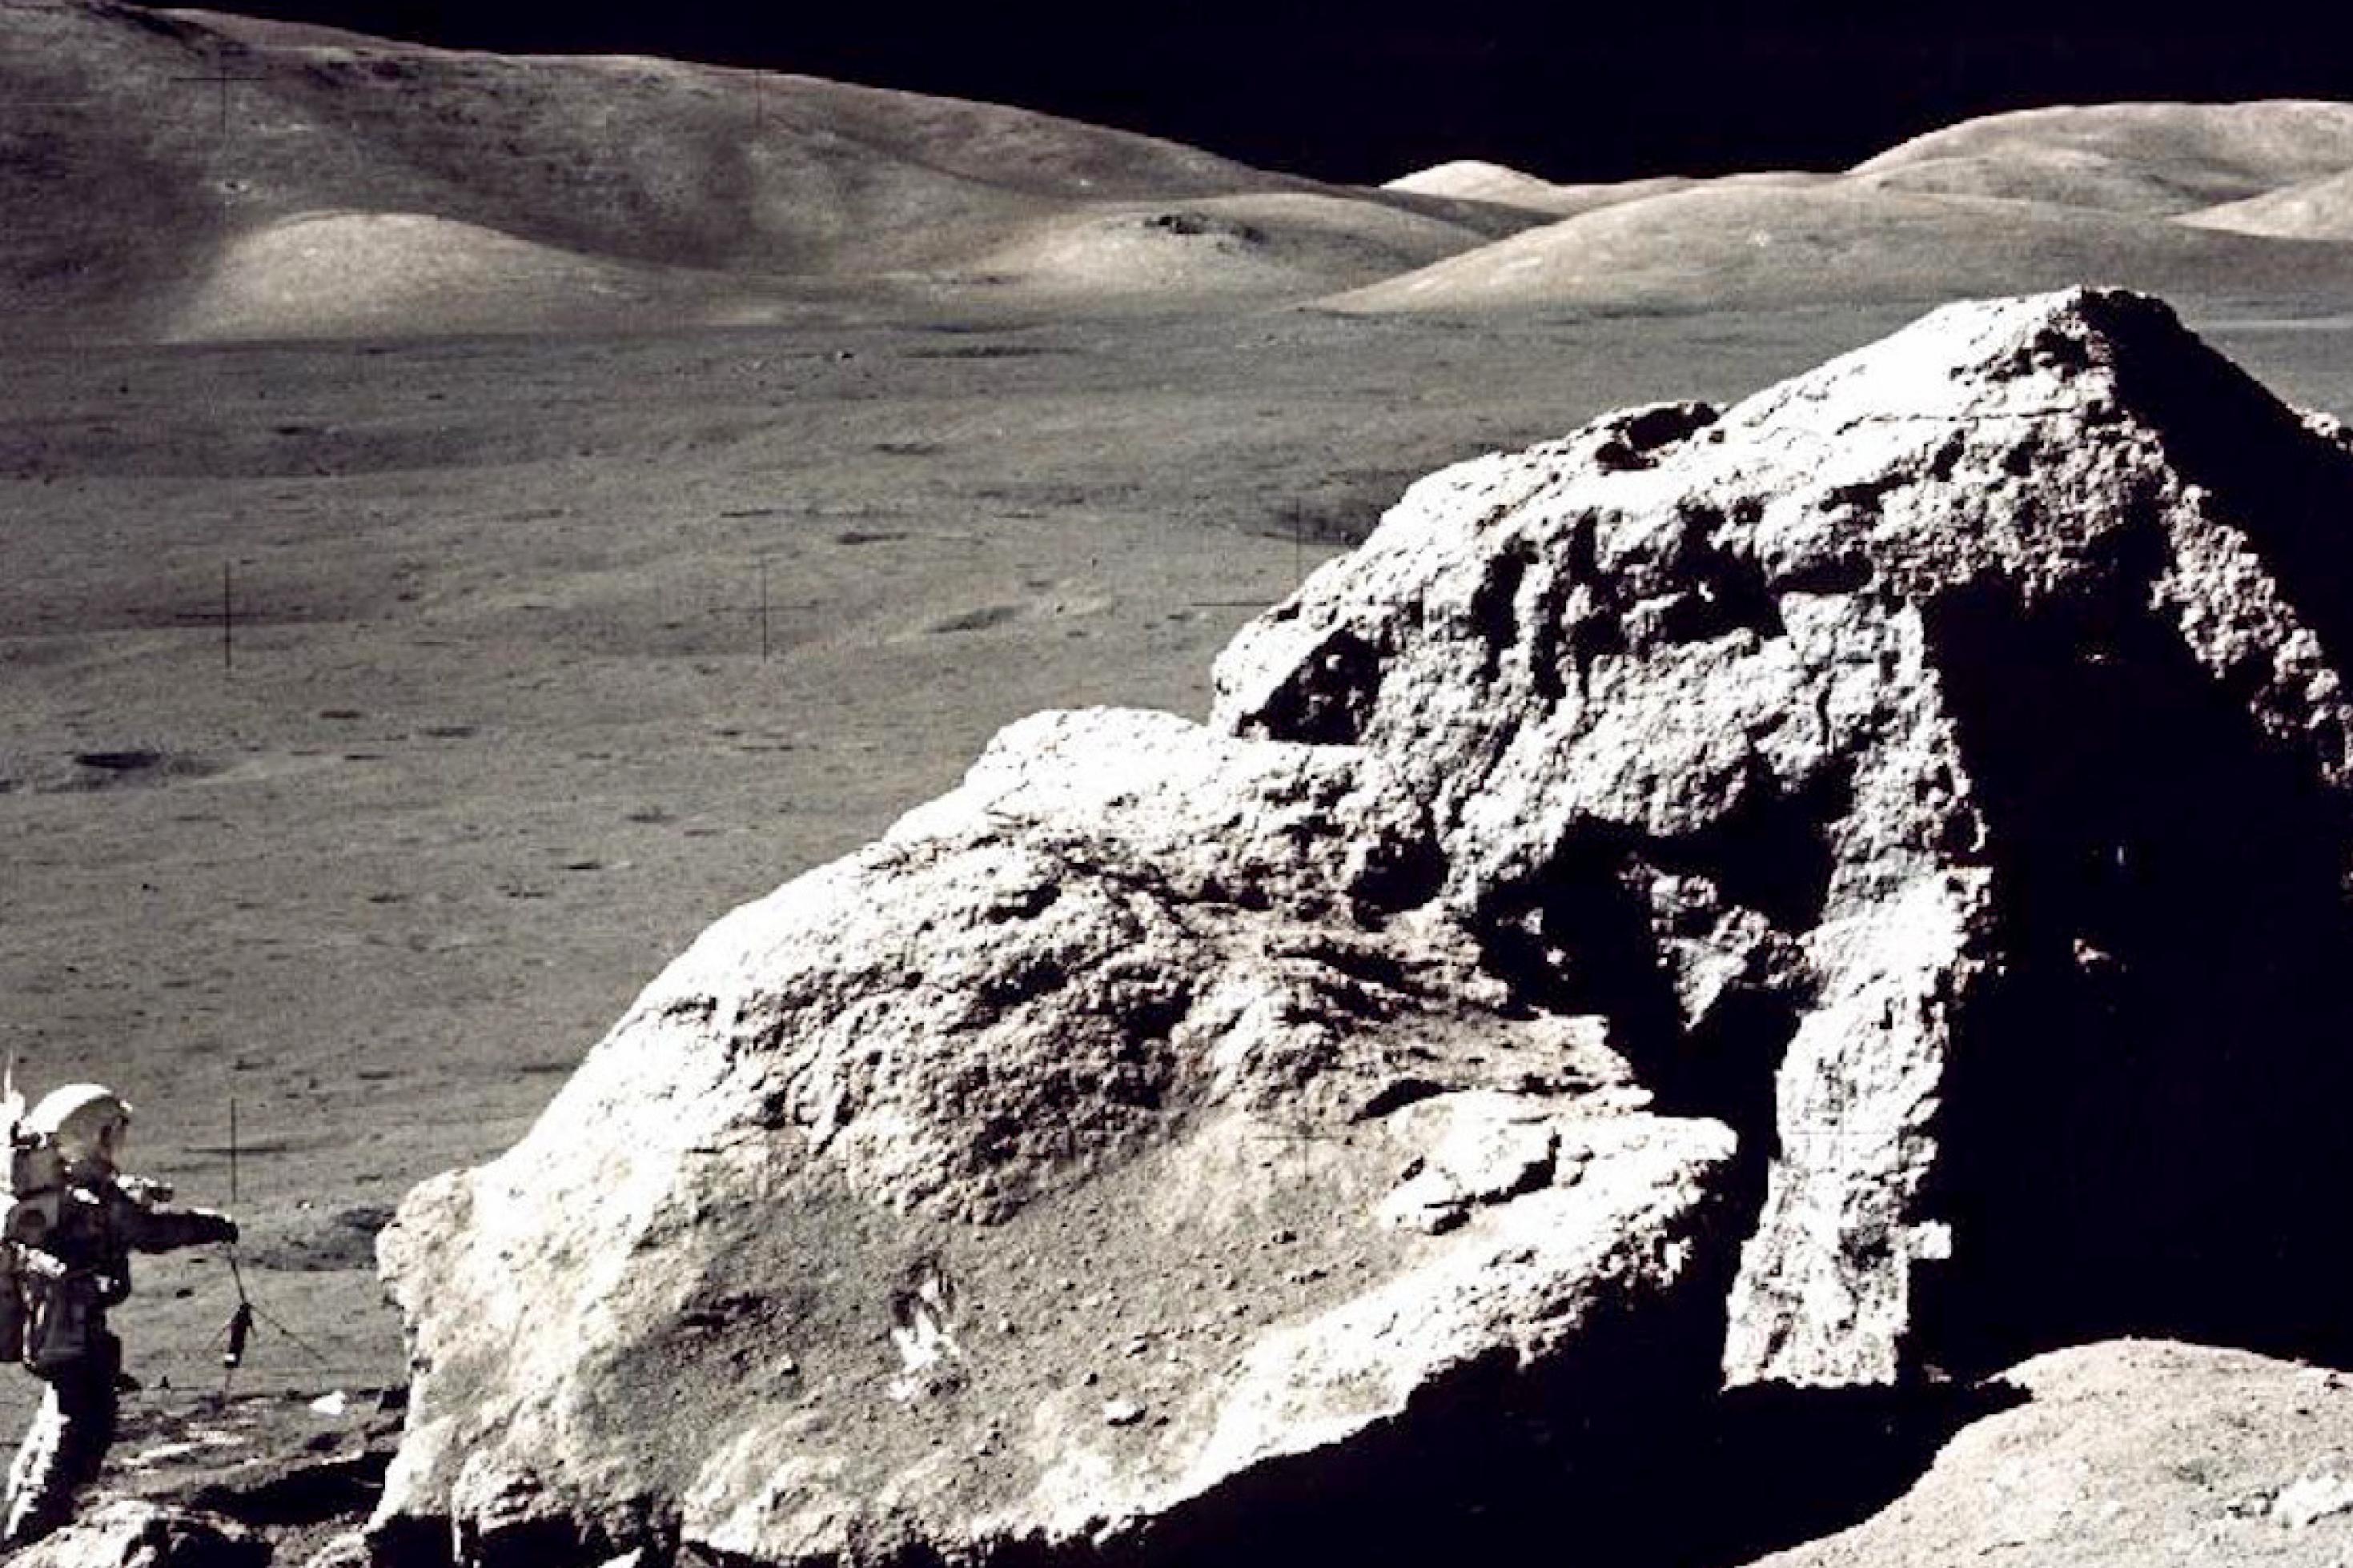 Auf dem Mond: ein hausgroßer Fels, daneben ein Astronaut im Raumanzug